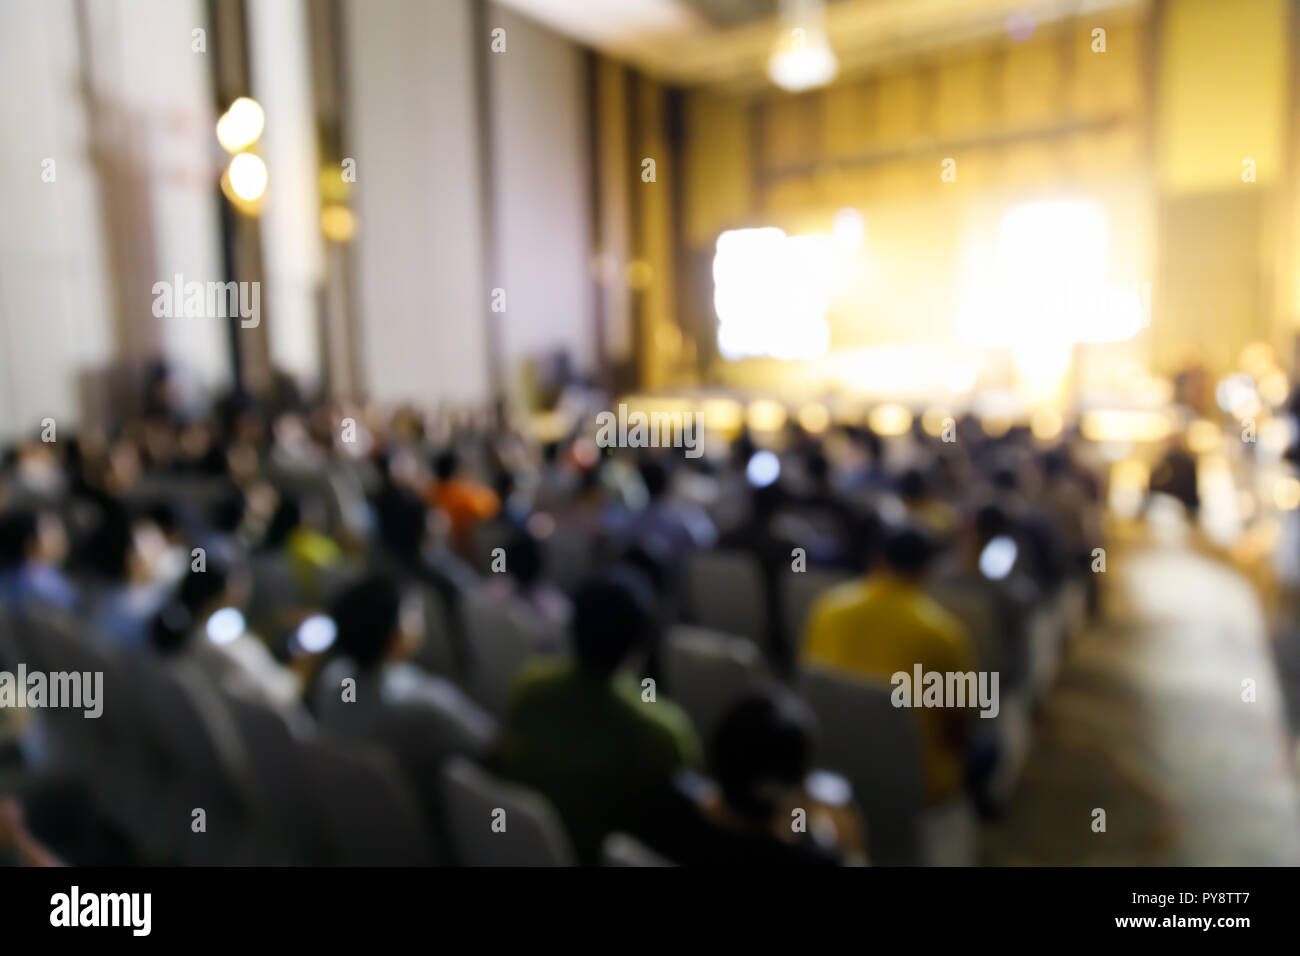 Abstract blur Zielgruppe Menschen in Pressekonferenz Ereignis oder Corporate Seminar Tagung Stockfoto